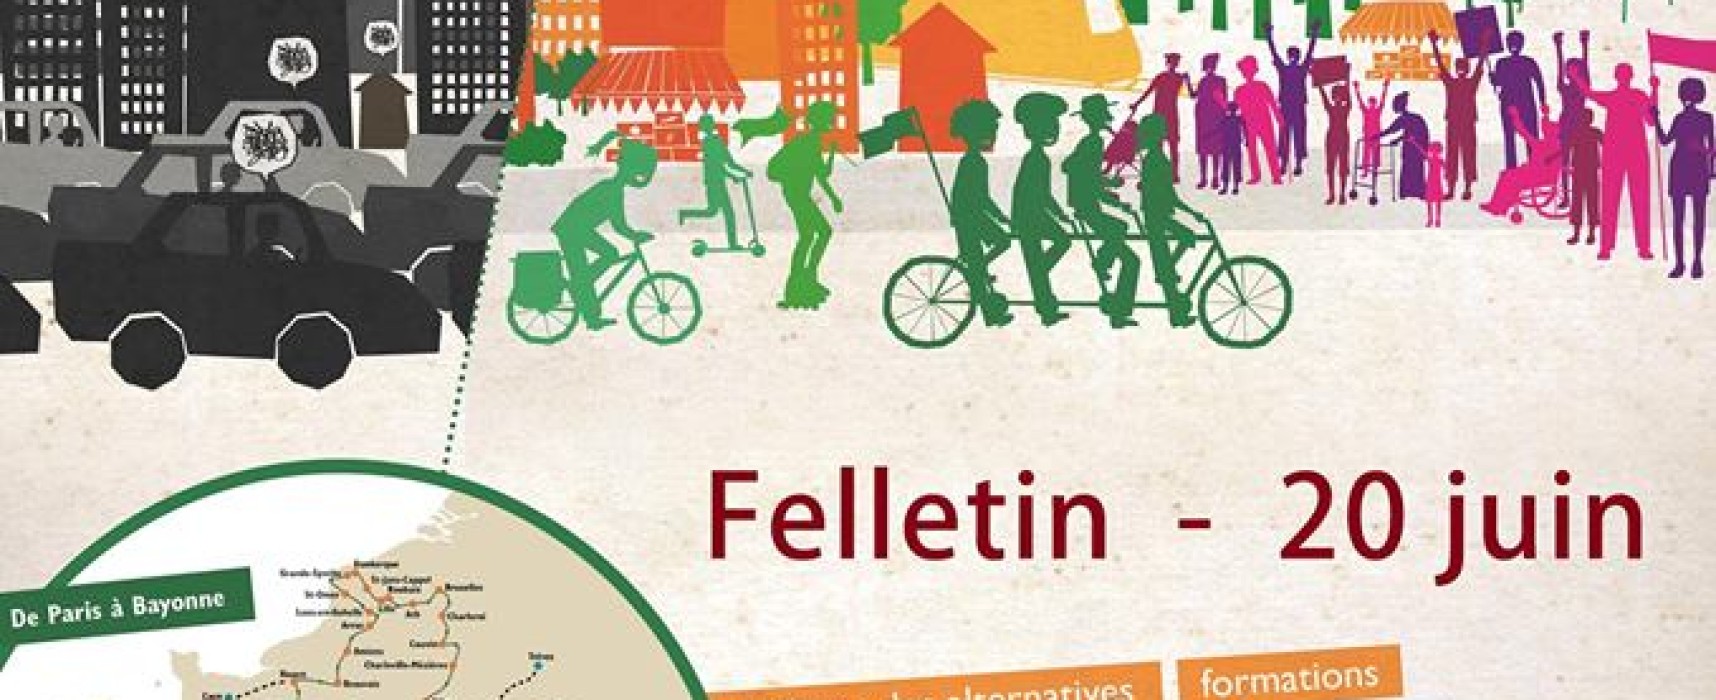 Tour Alternatiba 2018 à #Felletin